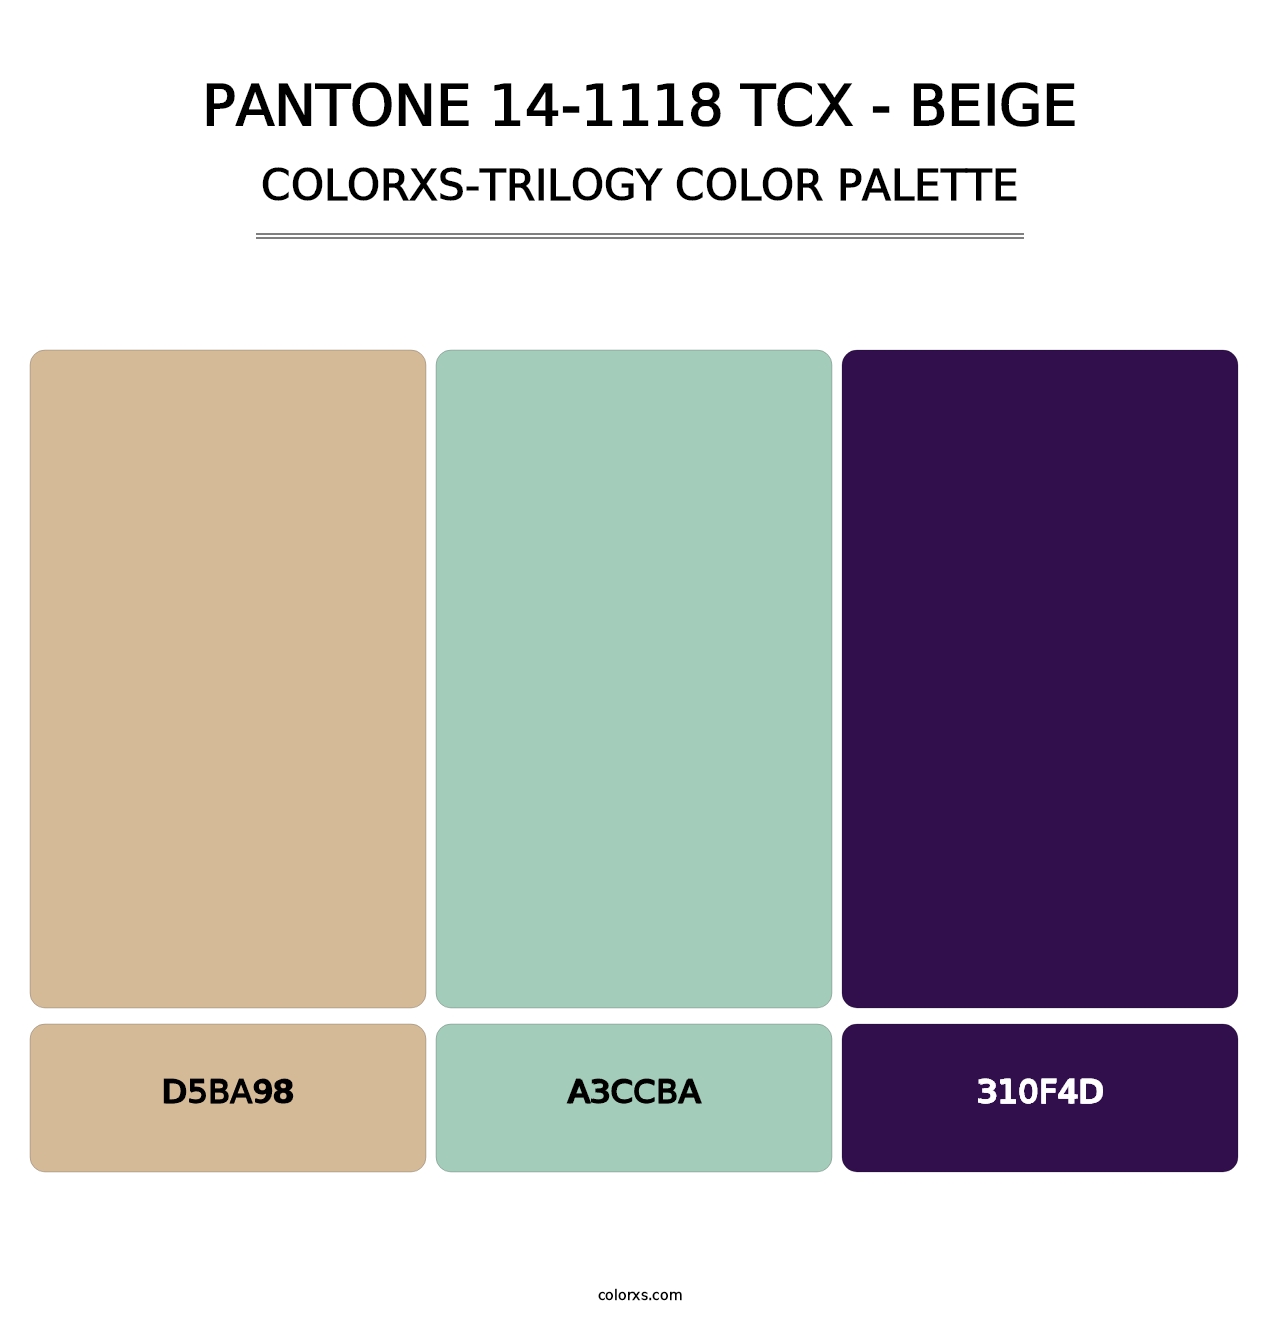 PANTONE 14-1118 TCX - Beige - Colorxs Trilogy Palette